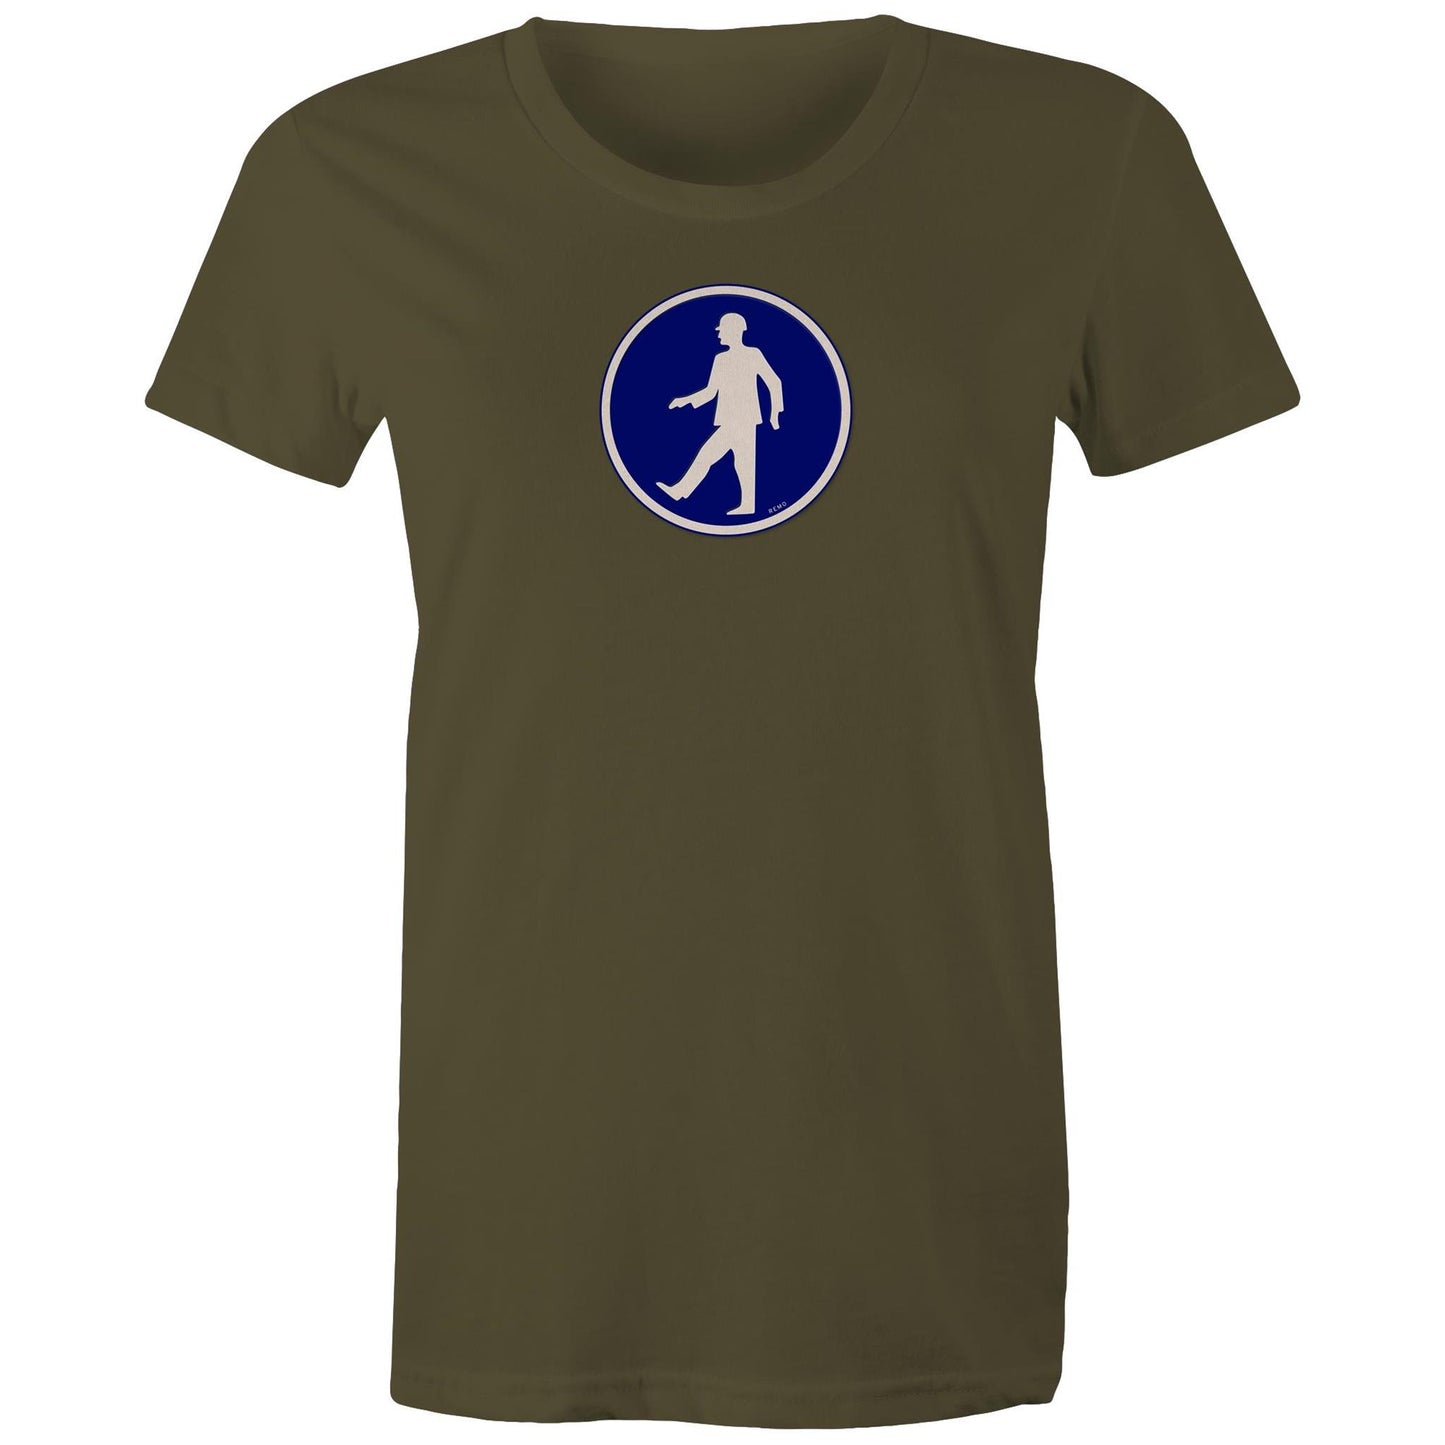 Walking Man T Shirts for Women